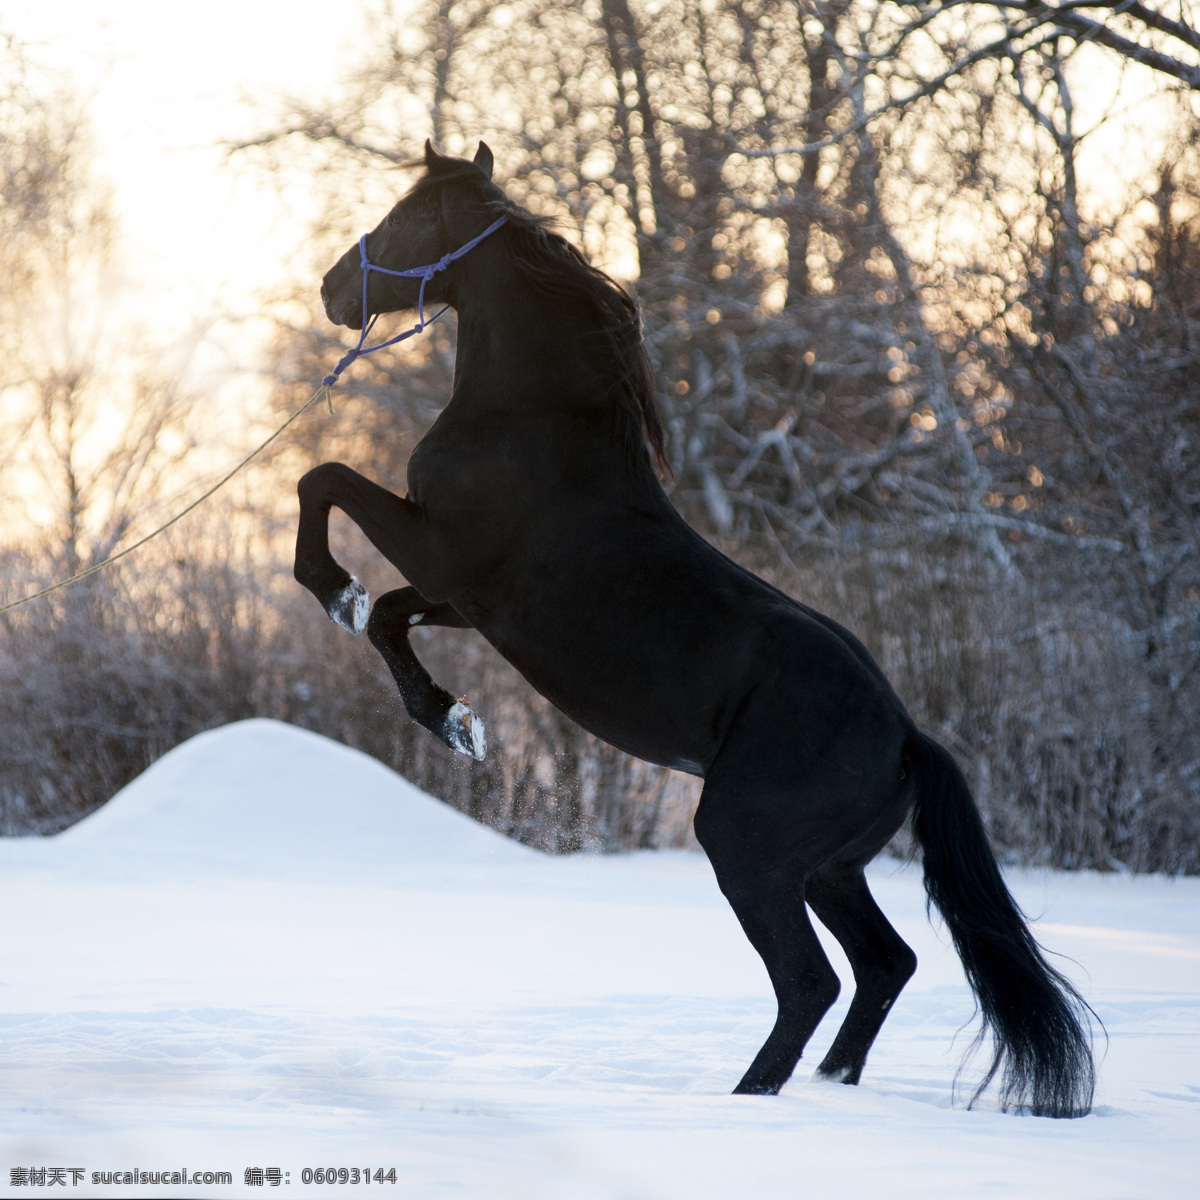 雪上 黑马 奔马 马匹 骏马 动物摄影 雪地风景 美丽雪景 陆地动物 生物世界